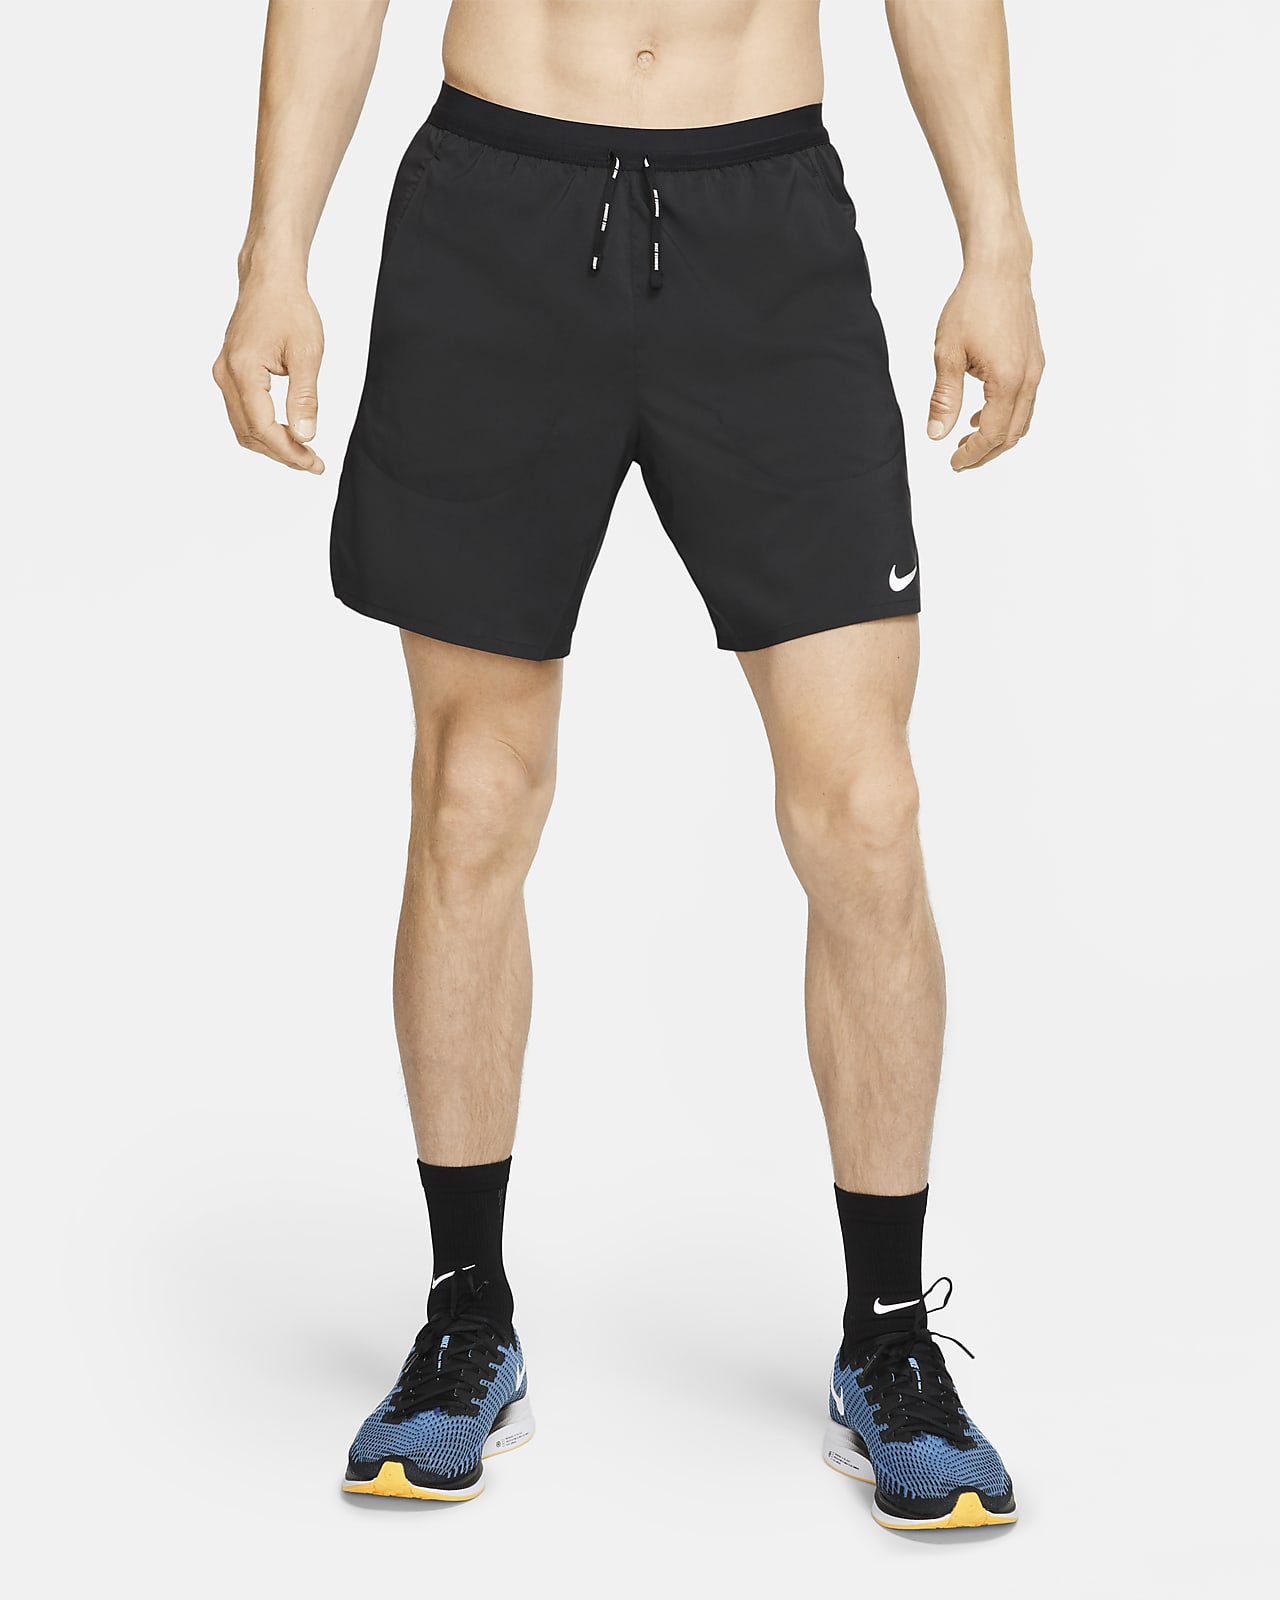 Shorts running 2 1 de 18 cm para Flex Stride. Nike.com